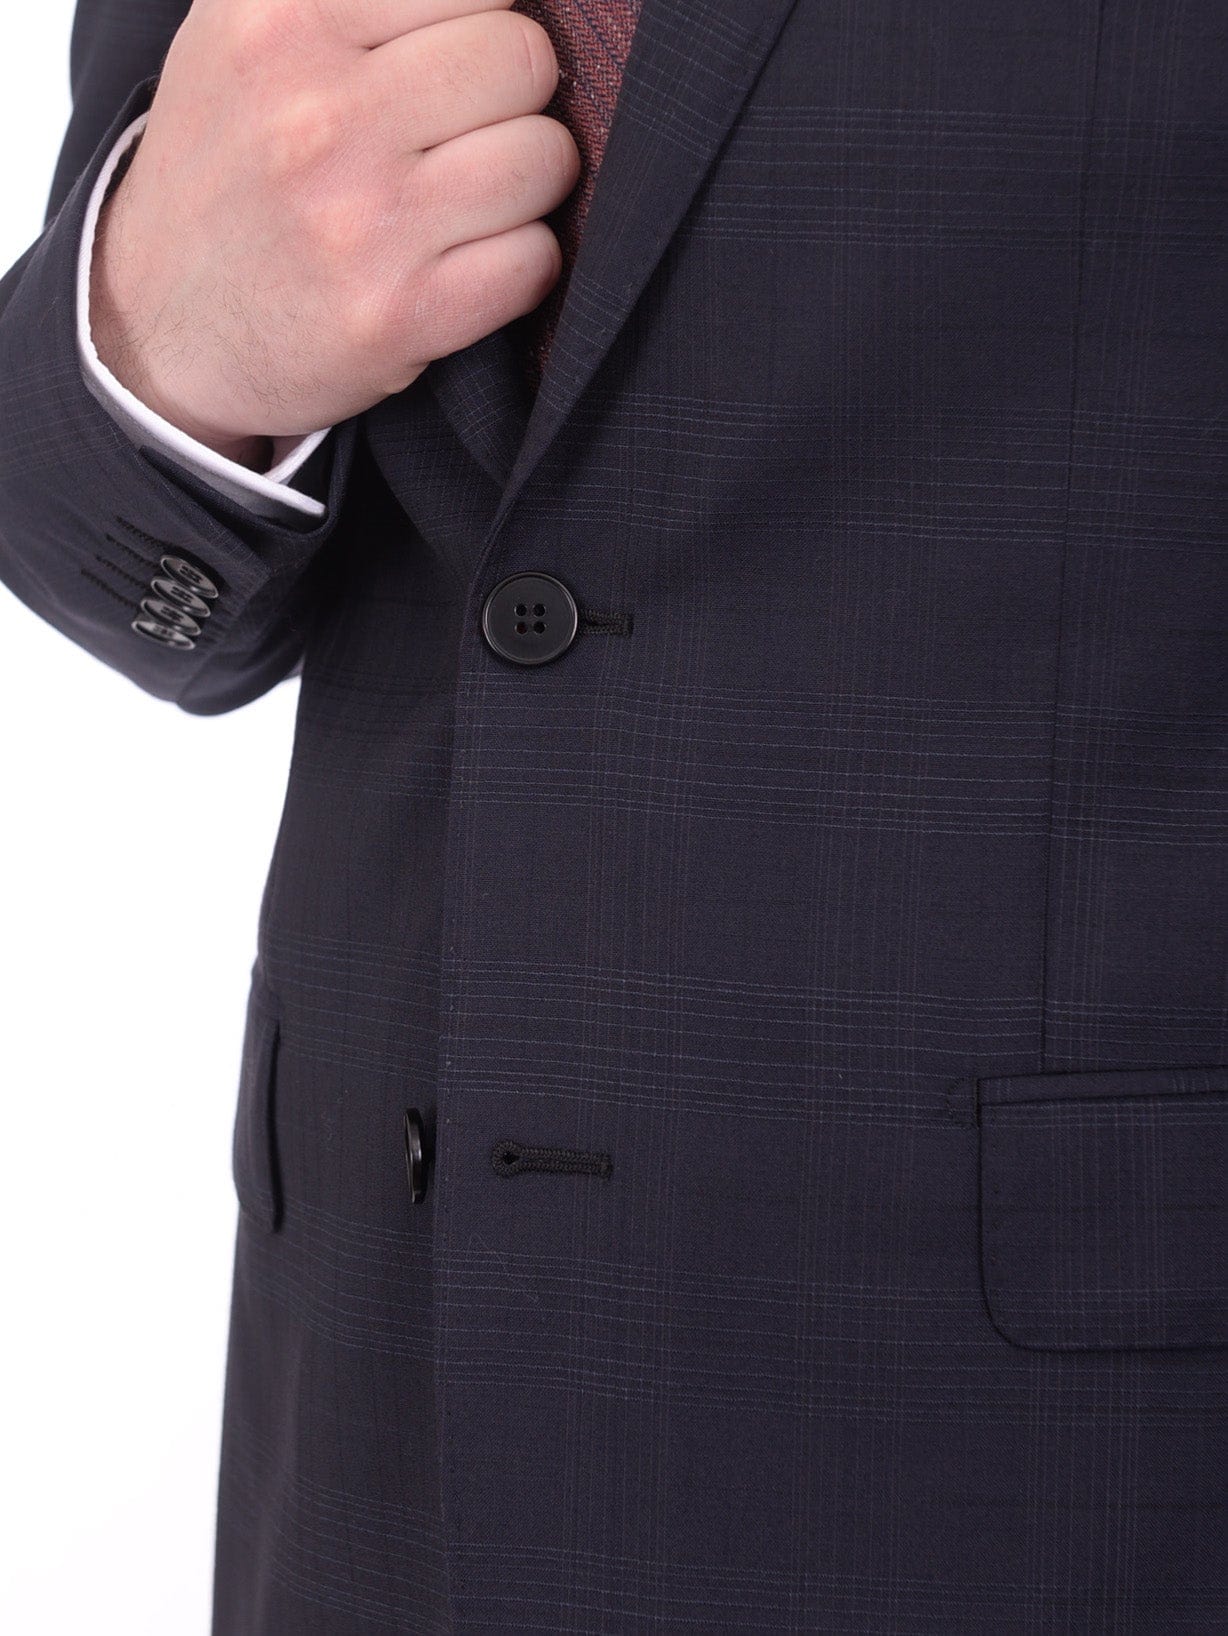 Napoli TWO PIECE SUITS Men's Napoli Slim Fit Blue Plaid Half Canvassed 2 Button Super 150s Wool Suit